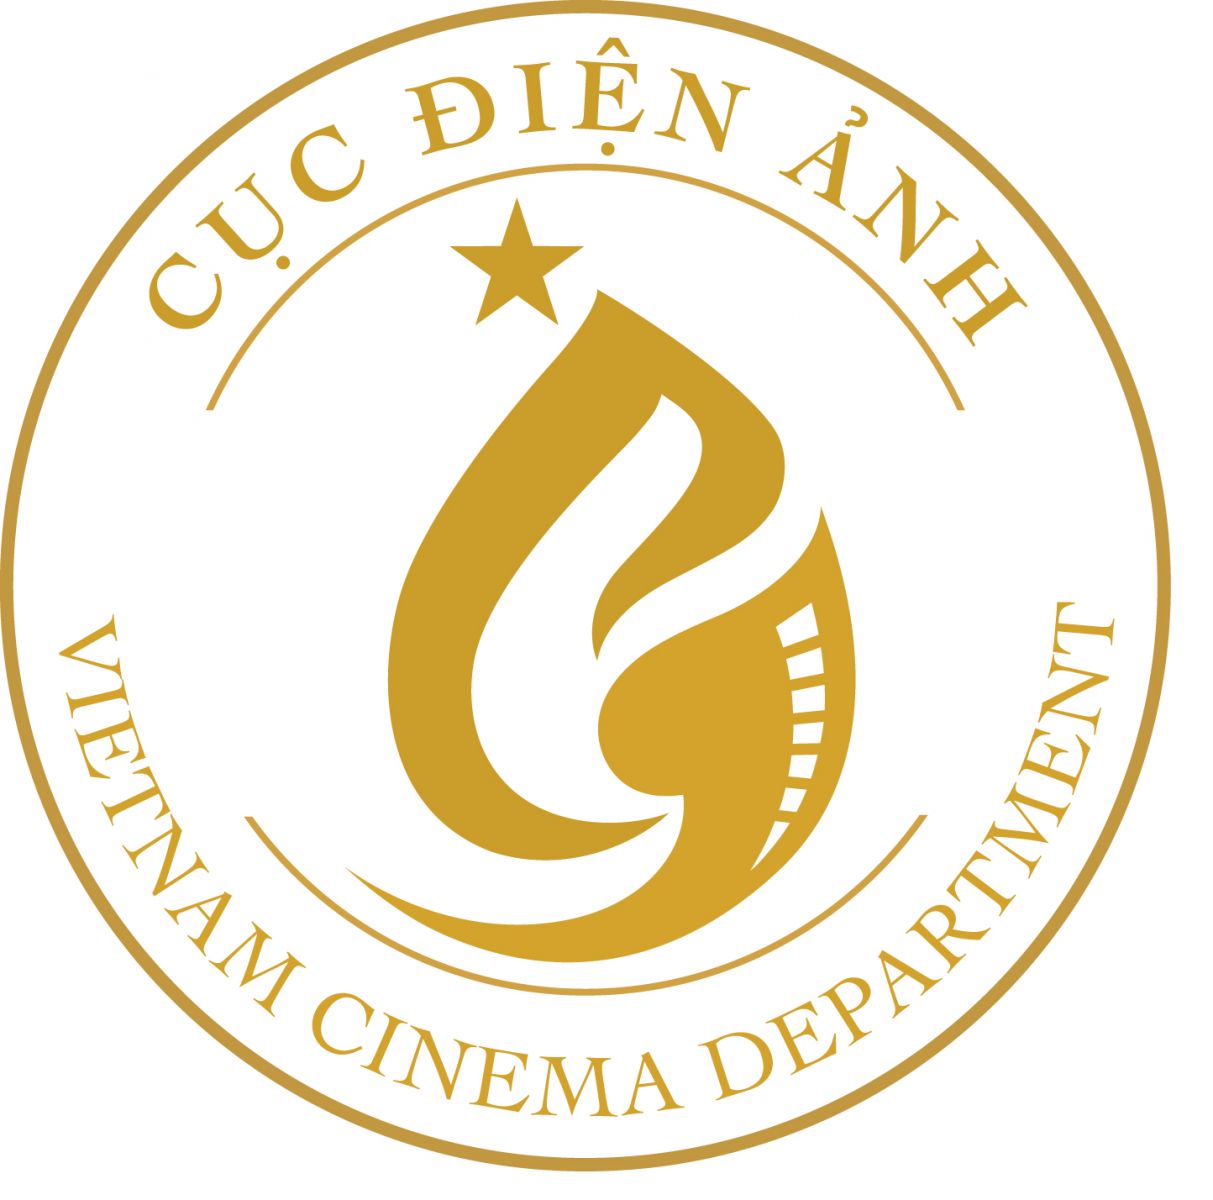 Công bố kết quả chọn mẫu biểu trưng (logo) Cục Điện ảnh